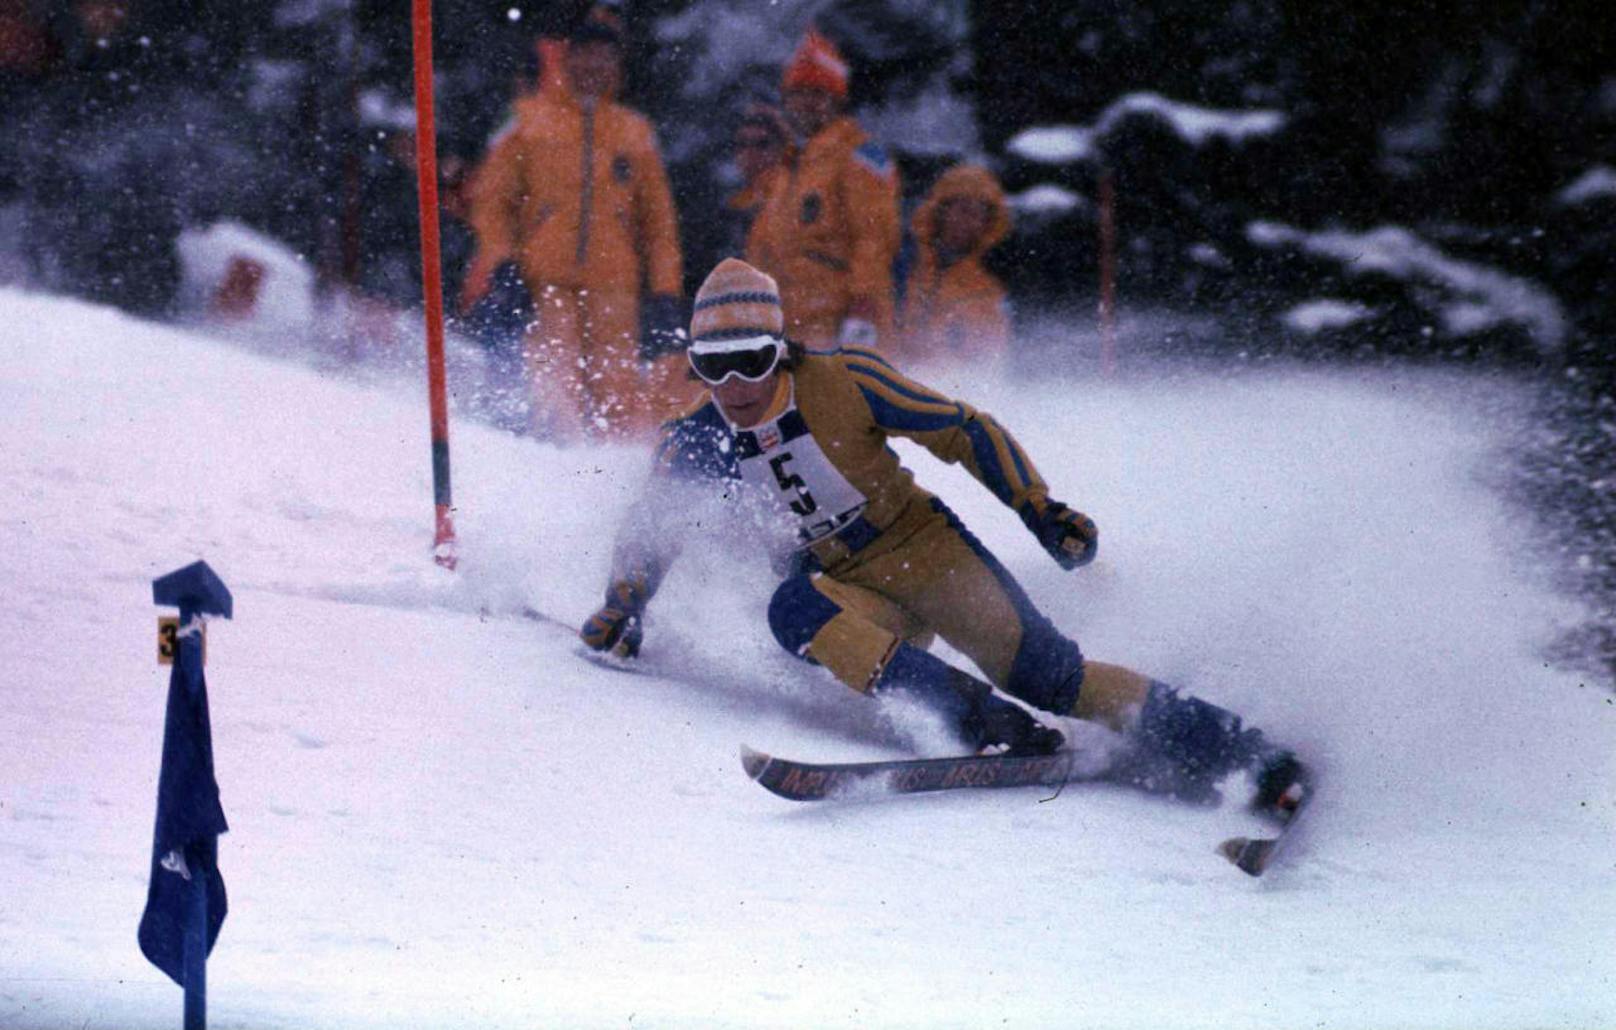 <b>Ski Alpin:</b> Der Pisten-Kaiser ist kein Österreicher! Mit 86 Weltcup-Siegen ist der Schwede Ingemar Stenmark der erfolgreichste Ski-Rennläufer der Geschichte. 1978/79 gewann er alle zehn Riesentorläufe, saisonübergreifend sogar 14 Rennen.